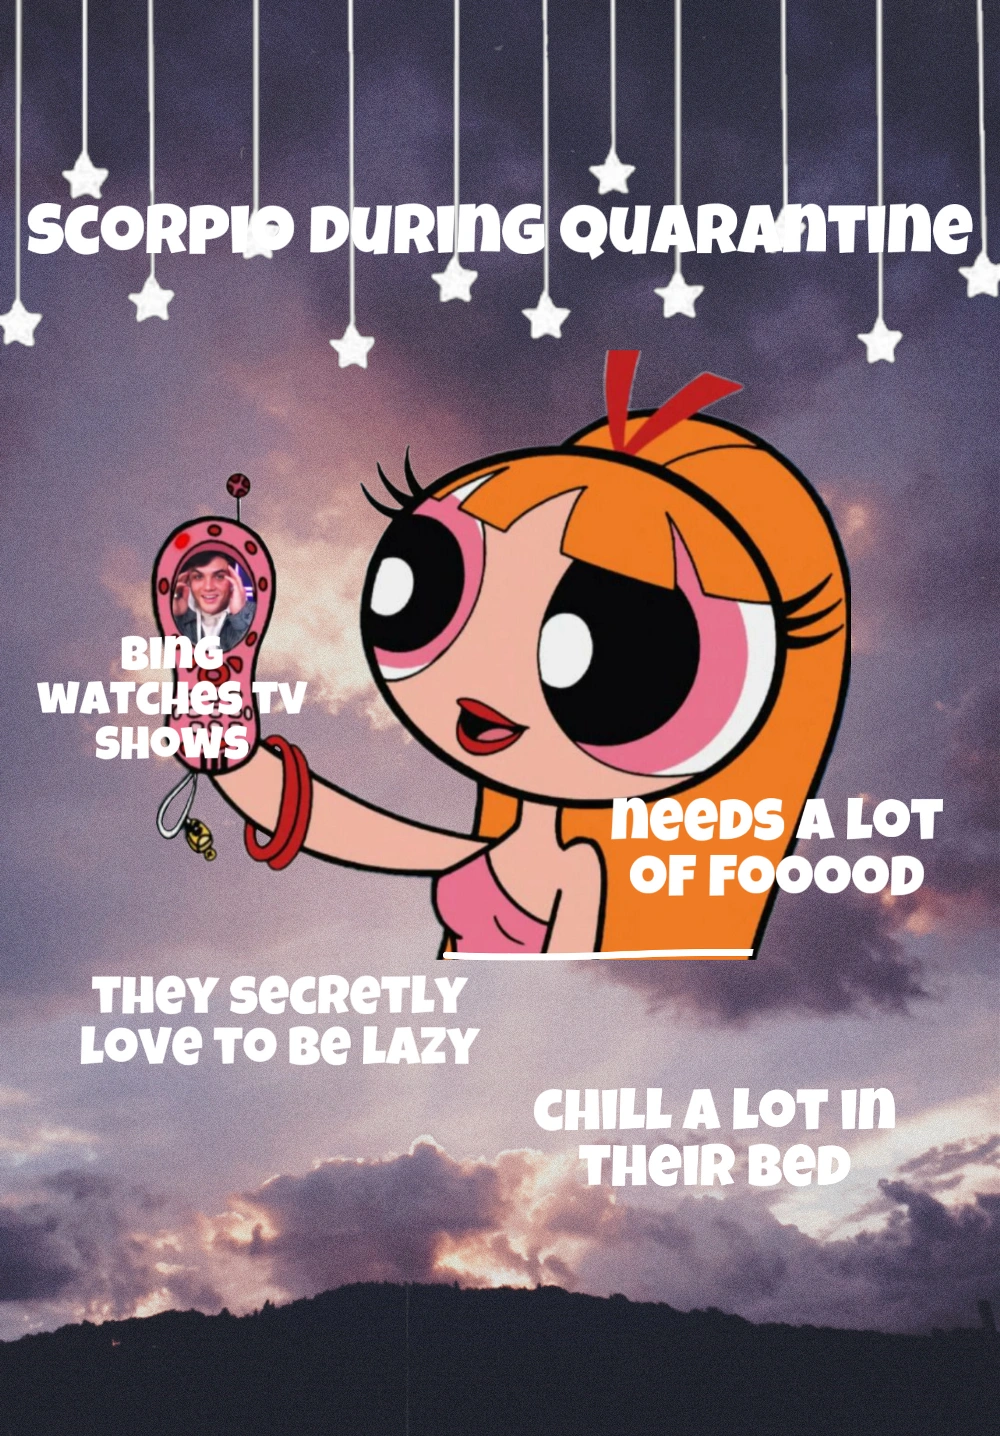 Scorpio during quarantine...
tell me